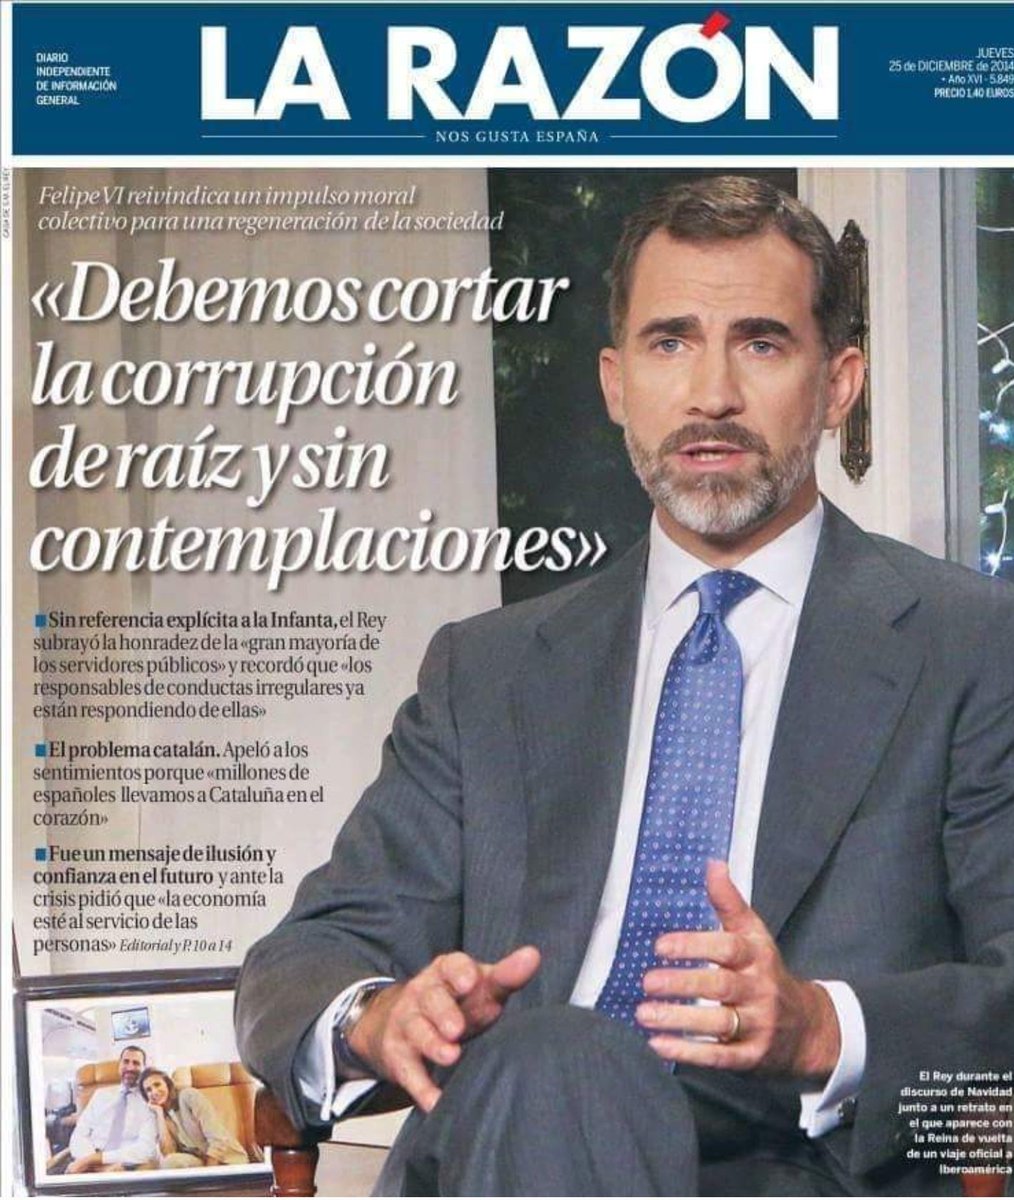 #BorbónYLadrón.... parece un chiste... por desgracia no lo es...y el sabía demasiado bien a lo que se dedicaba su papi en los ratos libres...